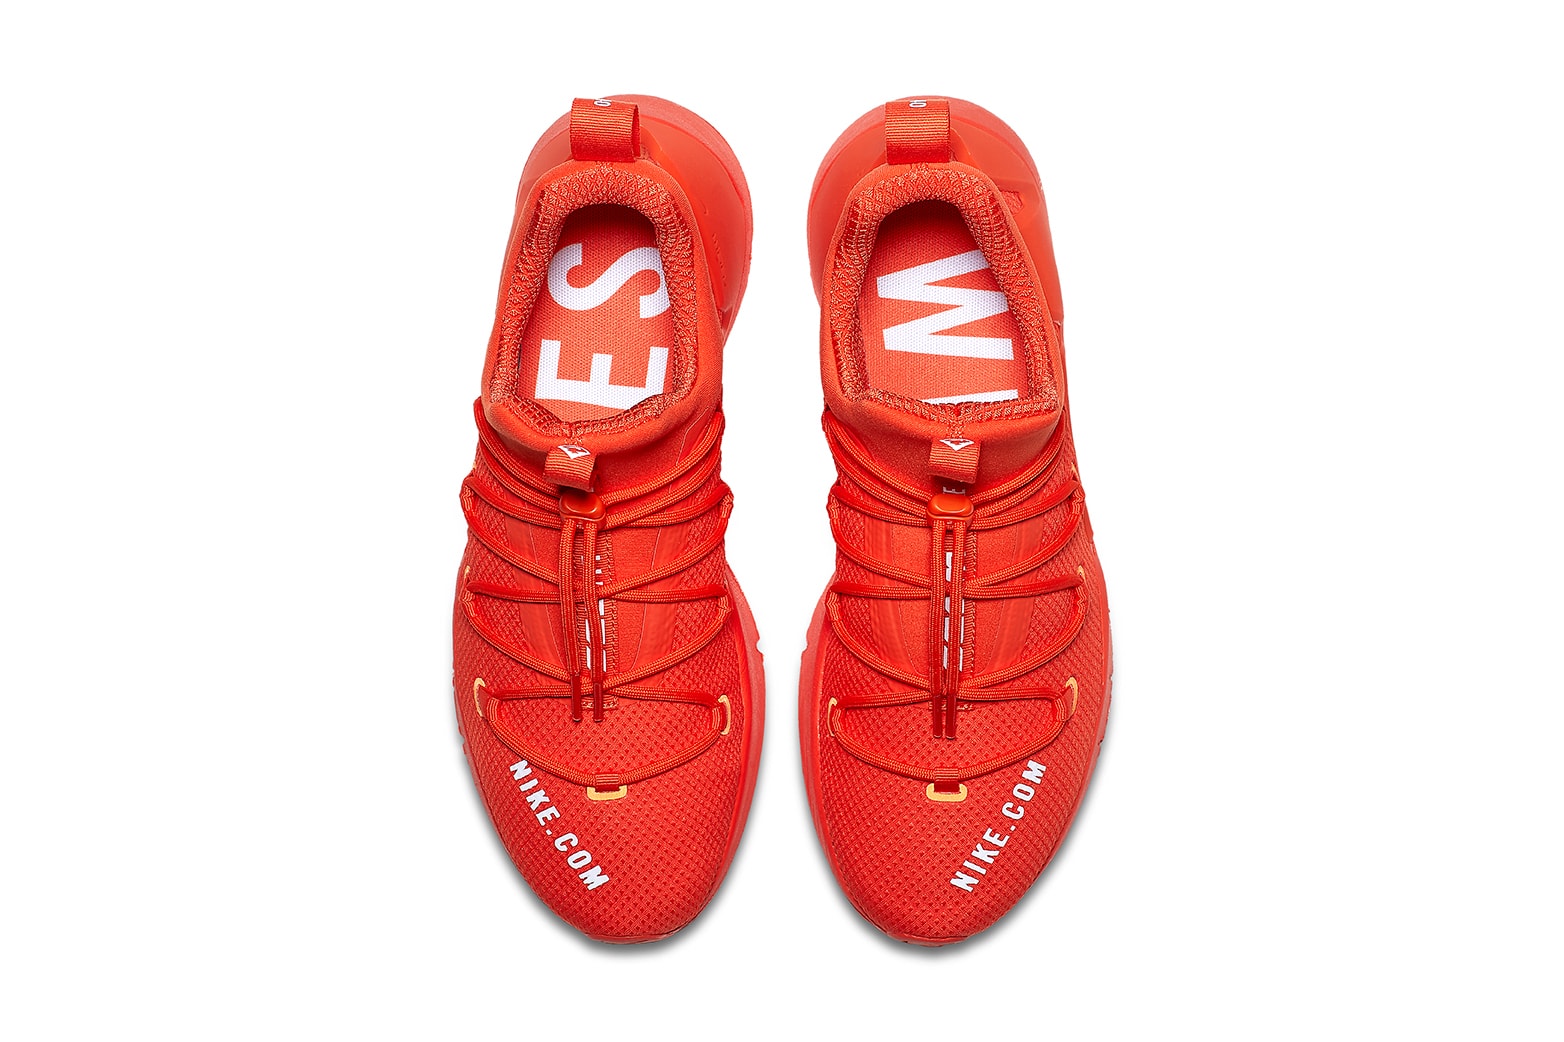 Nike Zoom Grade Nike com Store Orange 2017 December Release Date Info Sneakers Shoes Footwear